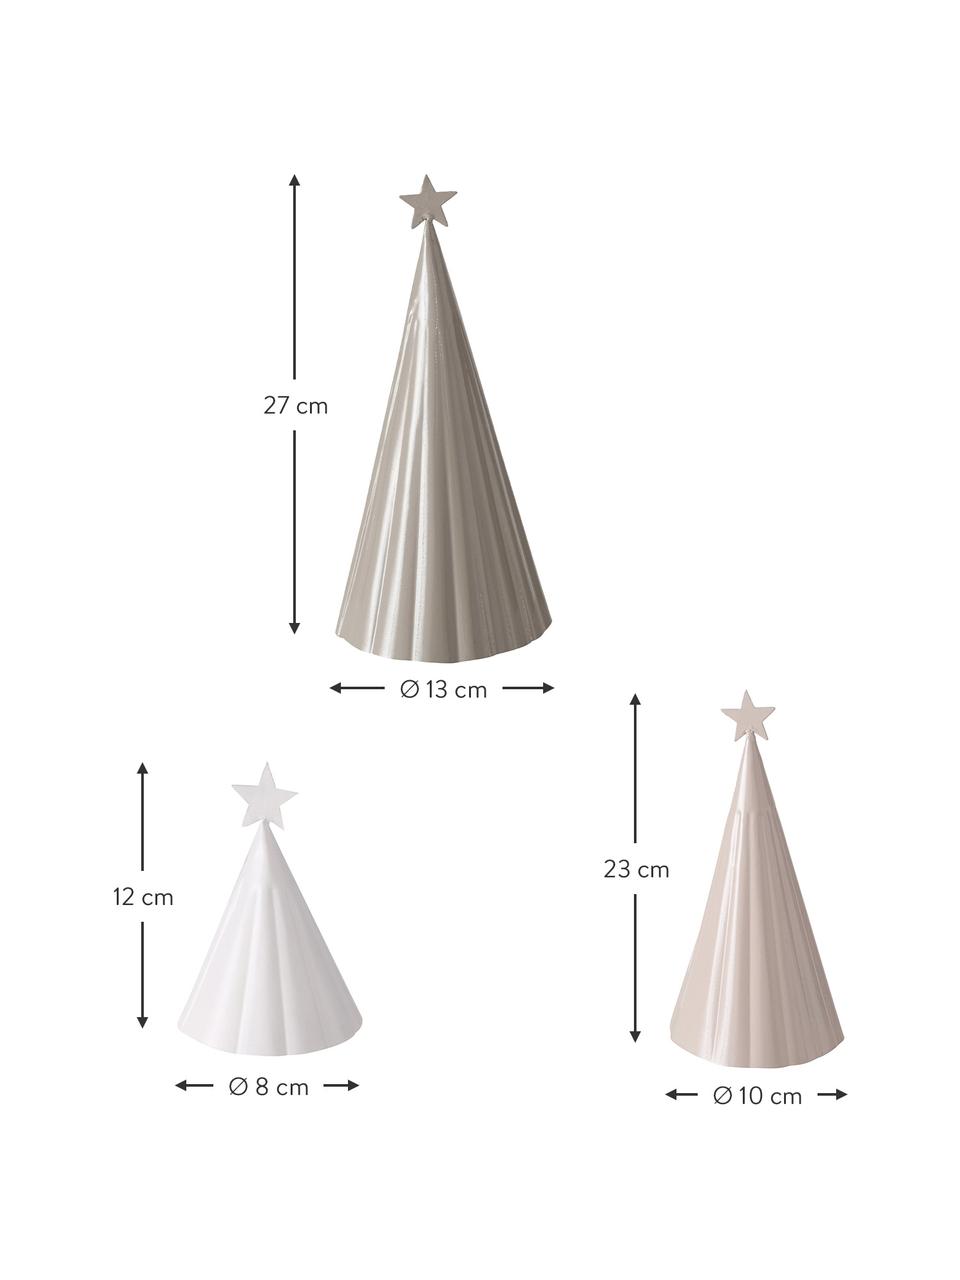 Deko-Weihnachtsbäume-Set Vassi, 3-tlg., Metall, pulverbeschichtet, Beige, Hellrosa, Weiß, Set mit verschiedenen Größen